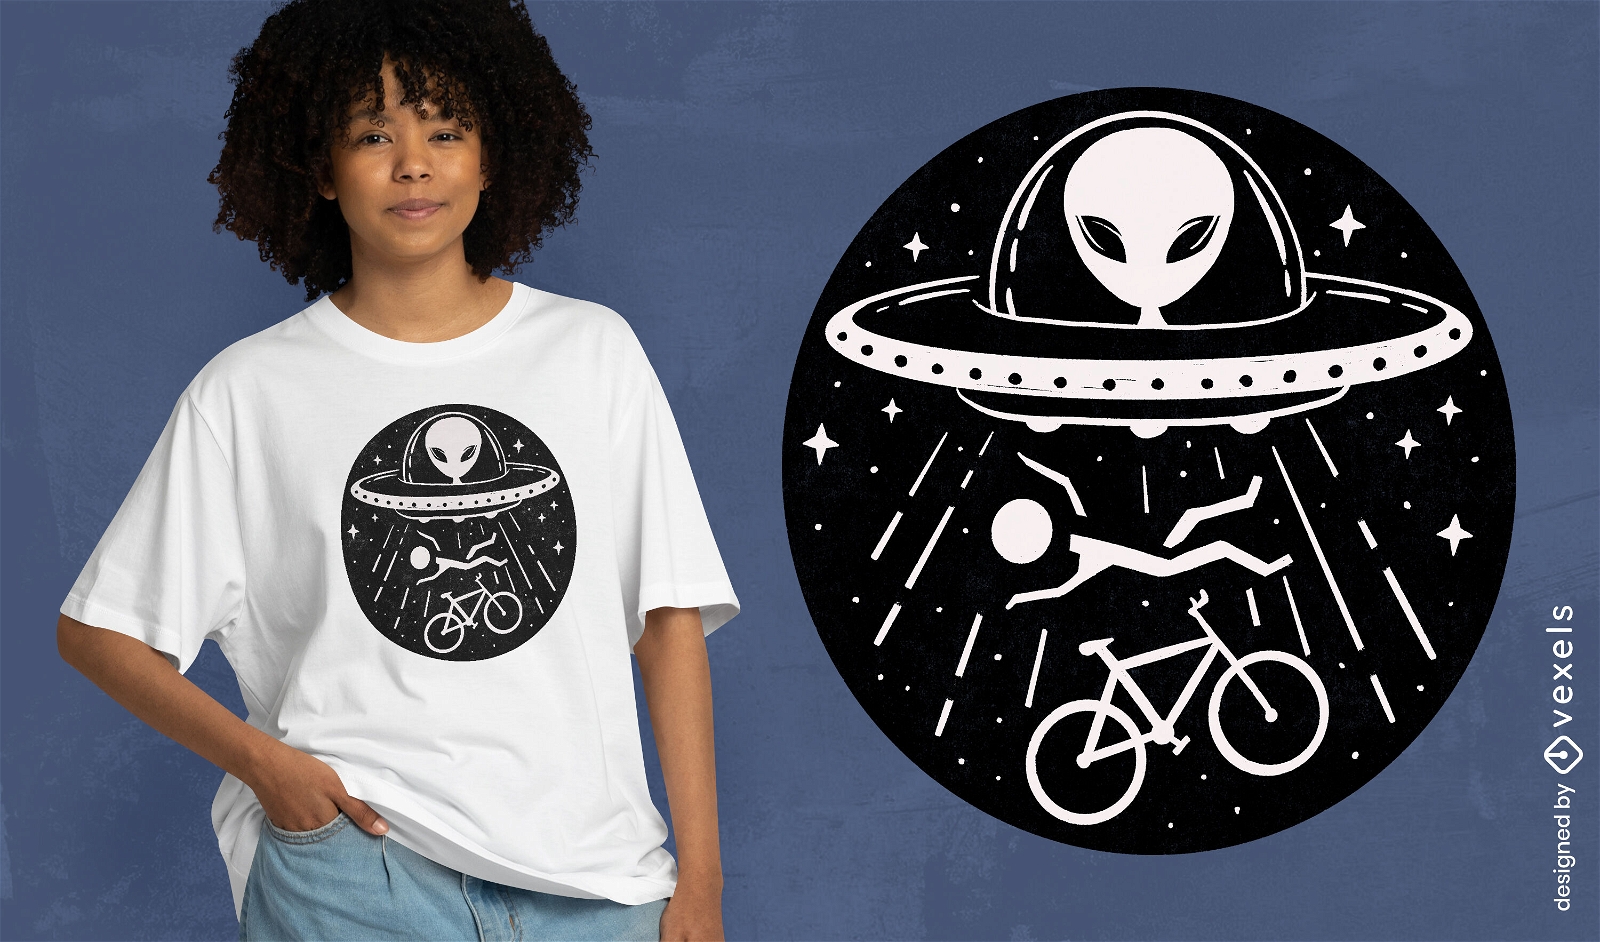 Diseño de camiseta de nave espacial de abducción extraterrestre.